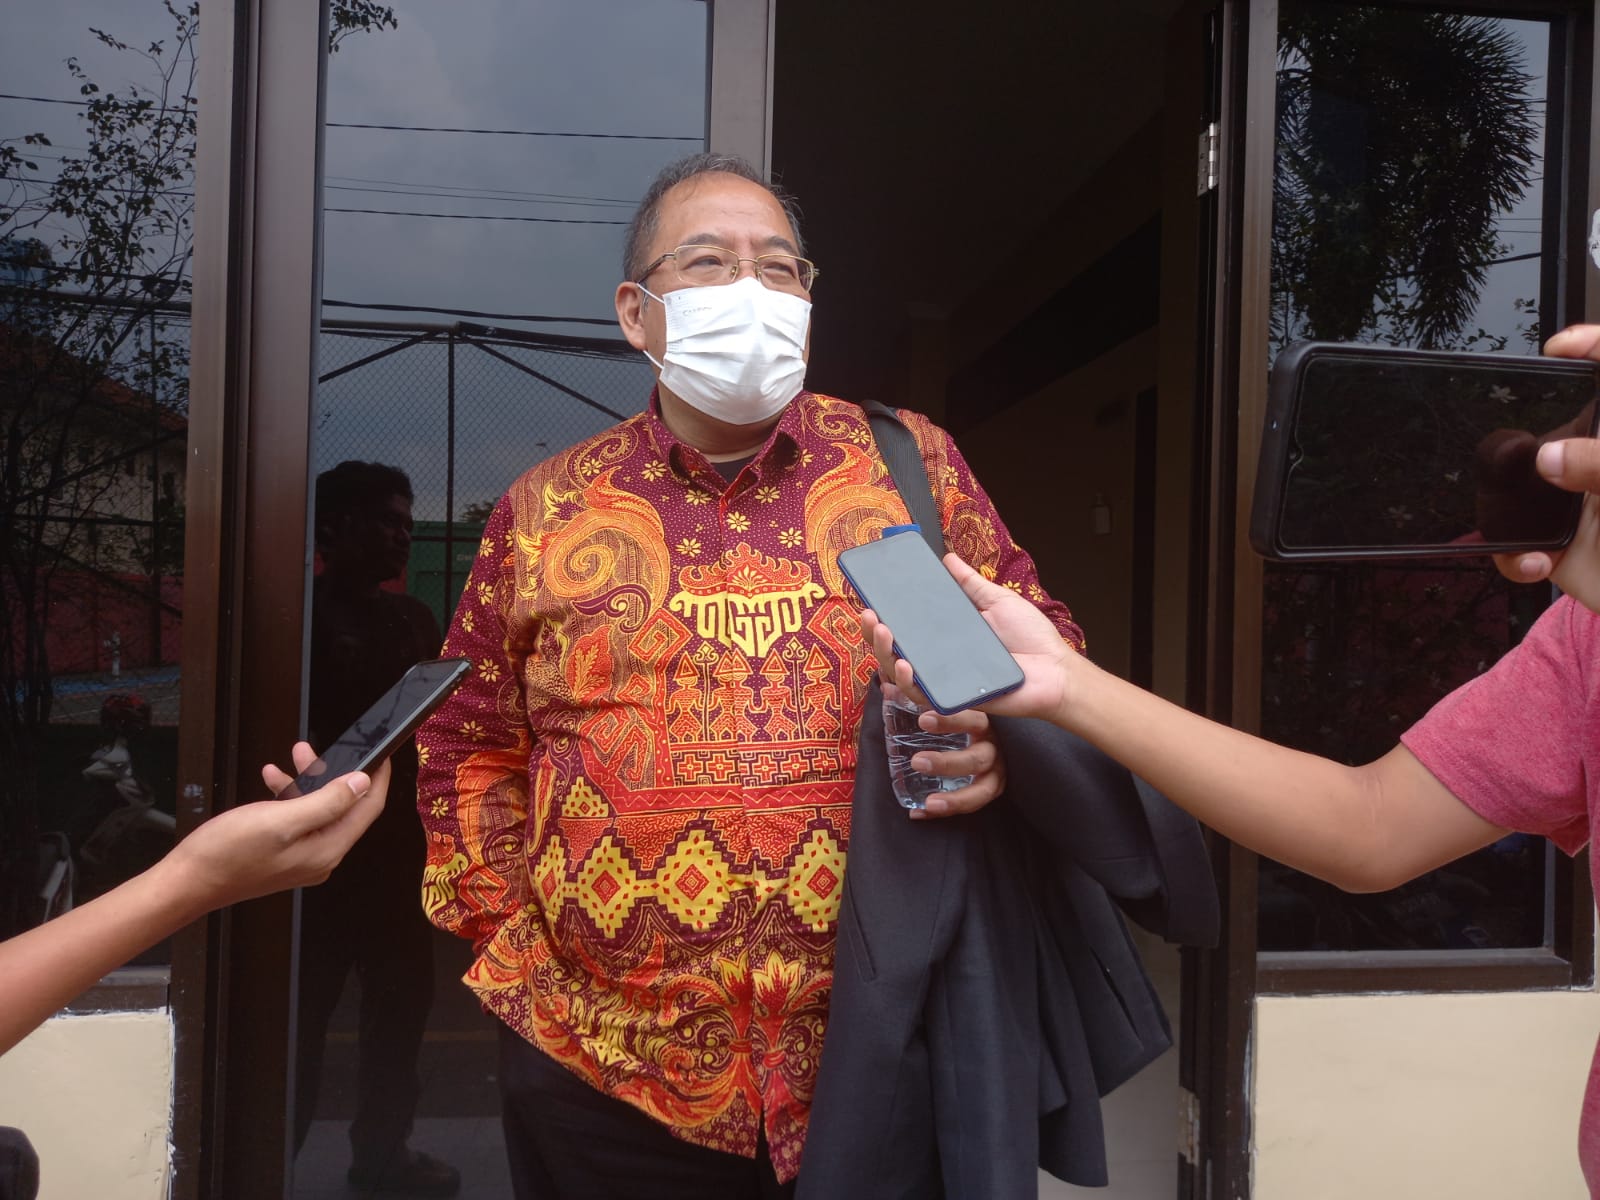 Humas PMB Unila M. Komarudin Turut Terperiksa sebagai Saksi oleh KPK